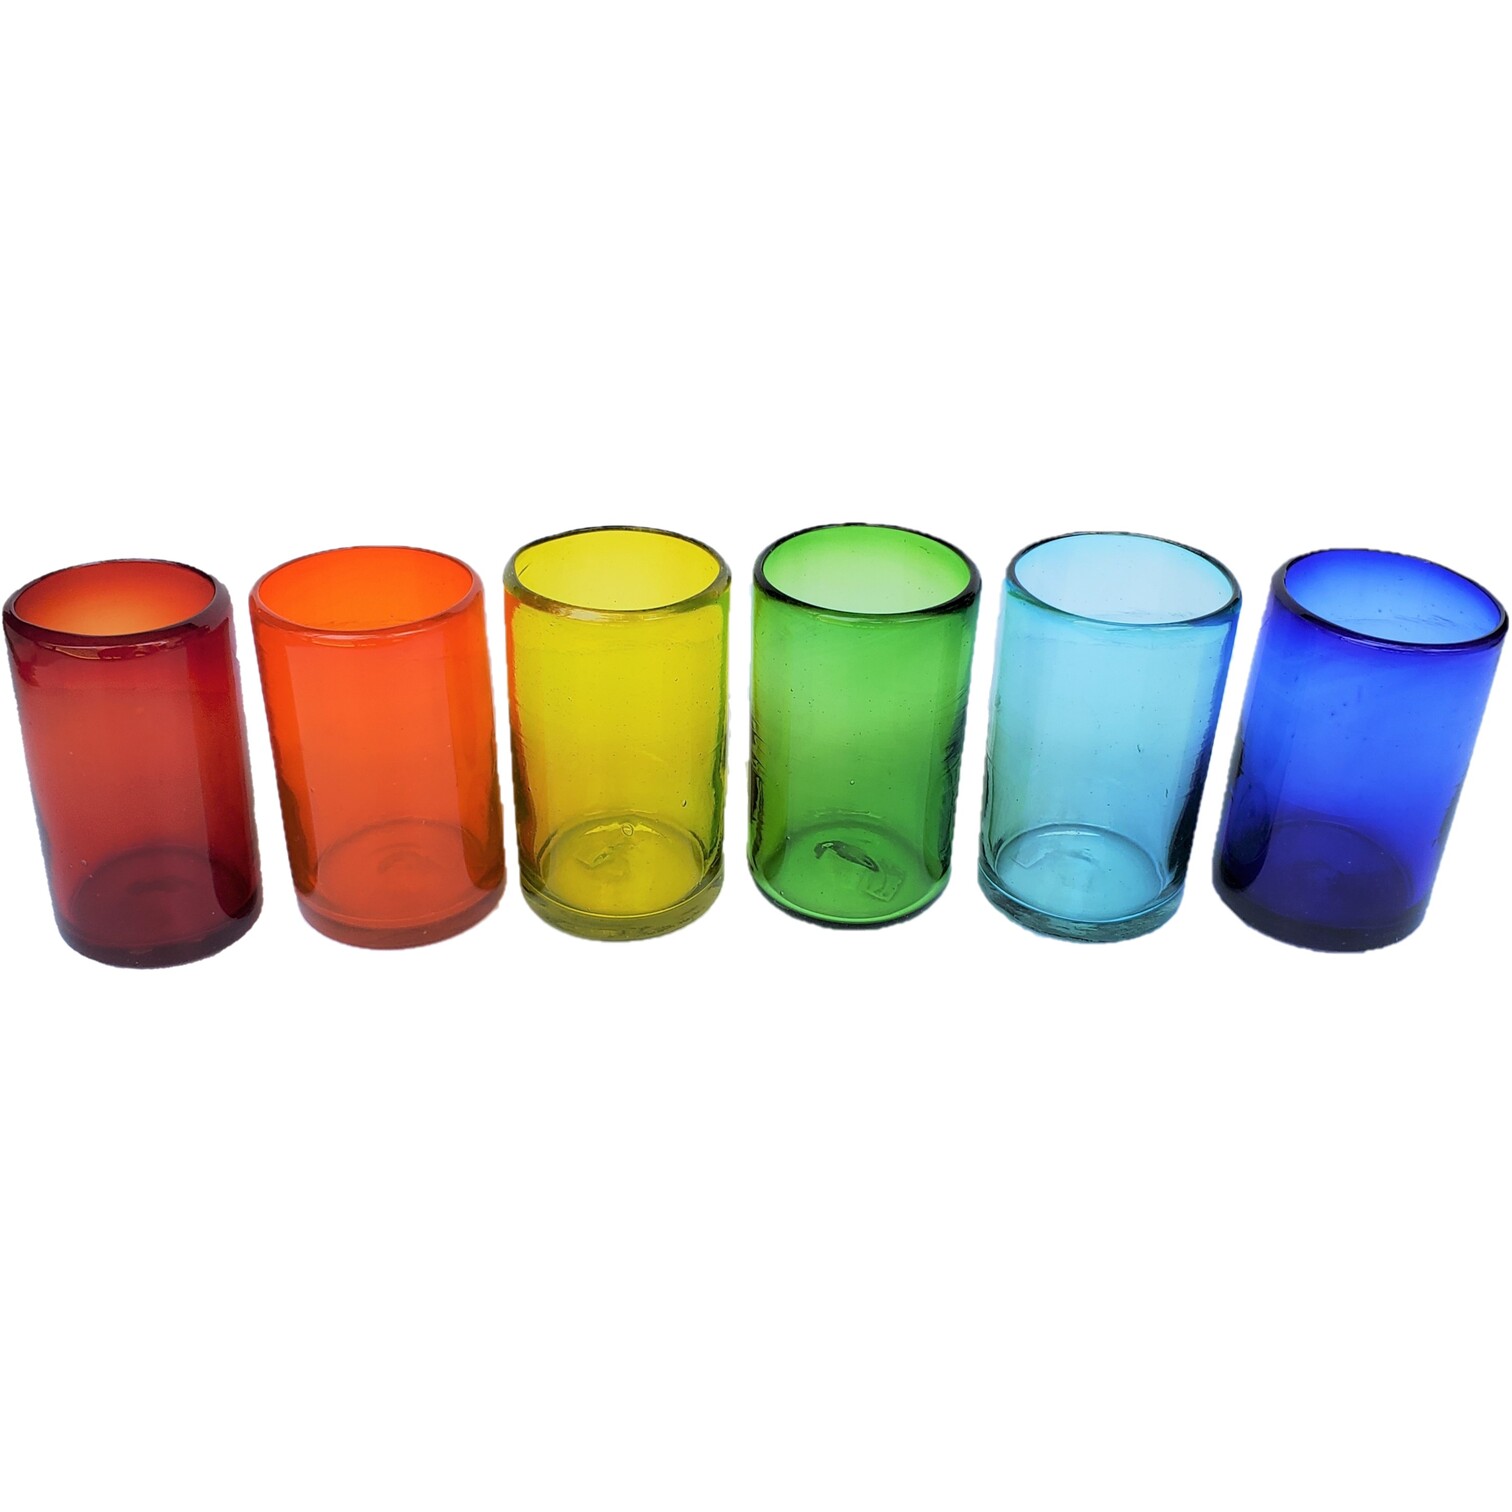 vasos grandes de colores Arcoris, 14 oz, Vidrio Reciclado, Libre de Plomo y Toxinas